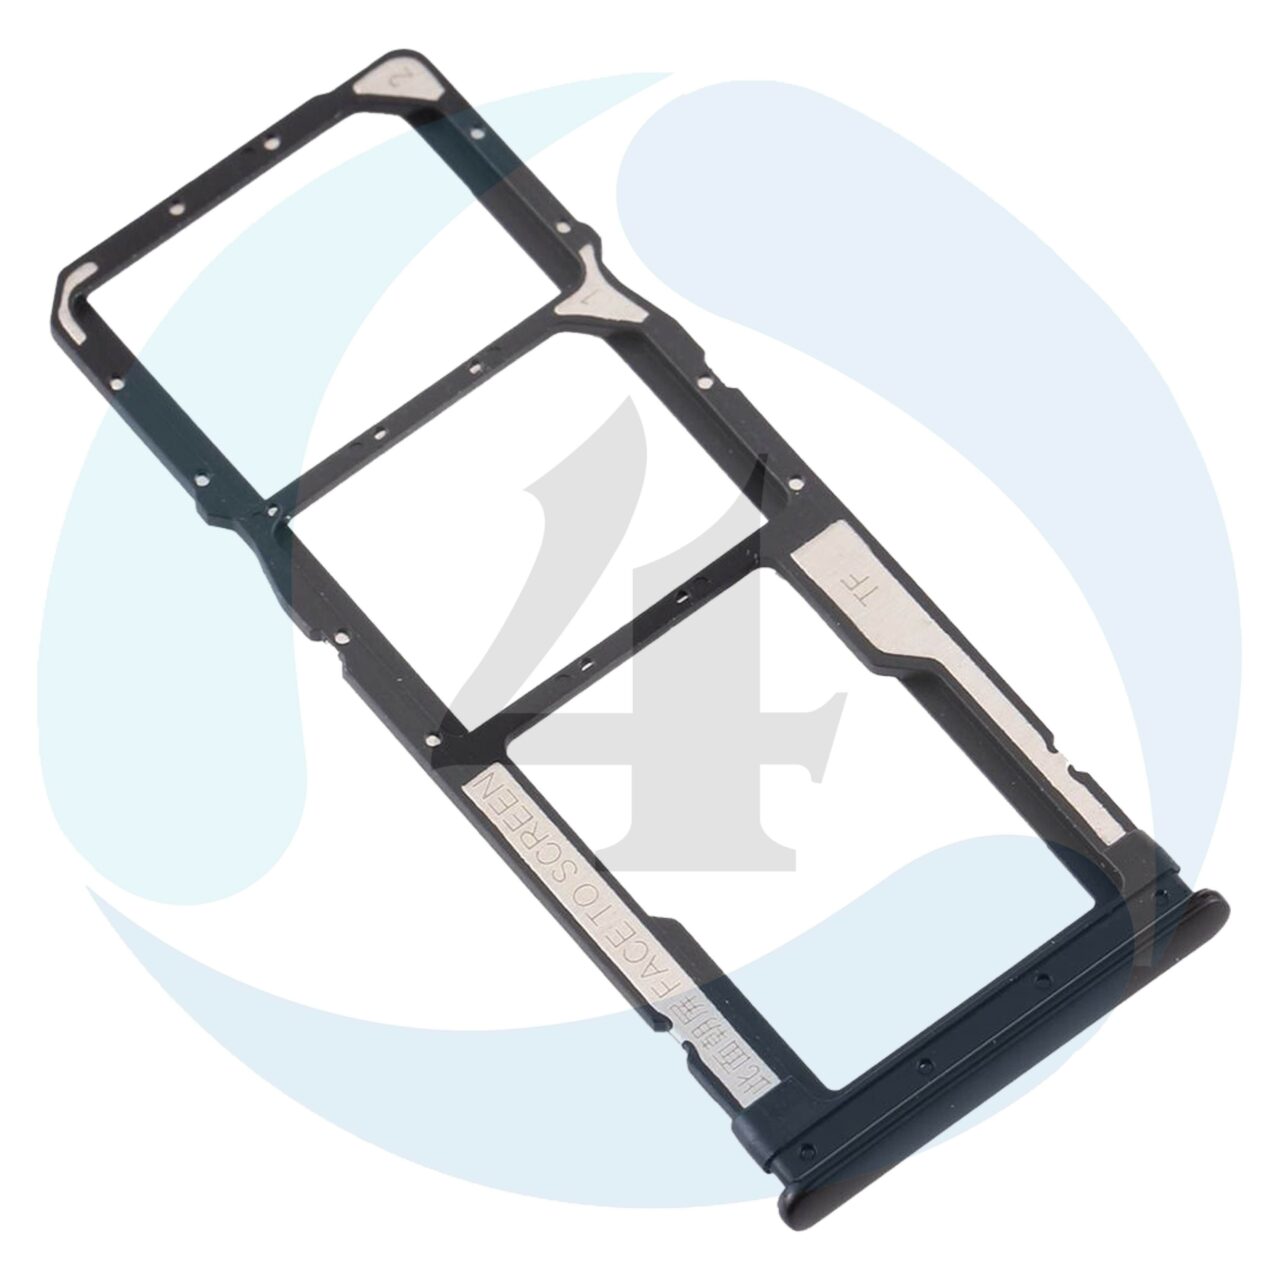 2 Slot SIM Card Tray for Xiaomi Redmi Note 8 Micro SD Card Tray for Redmi